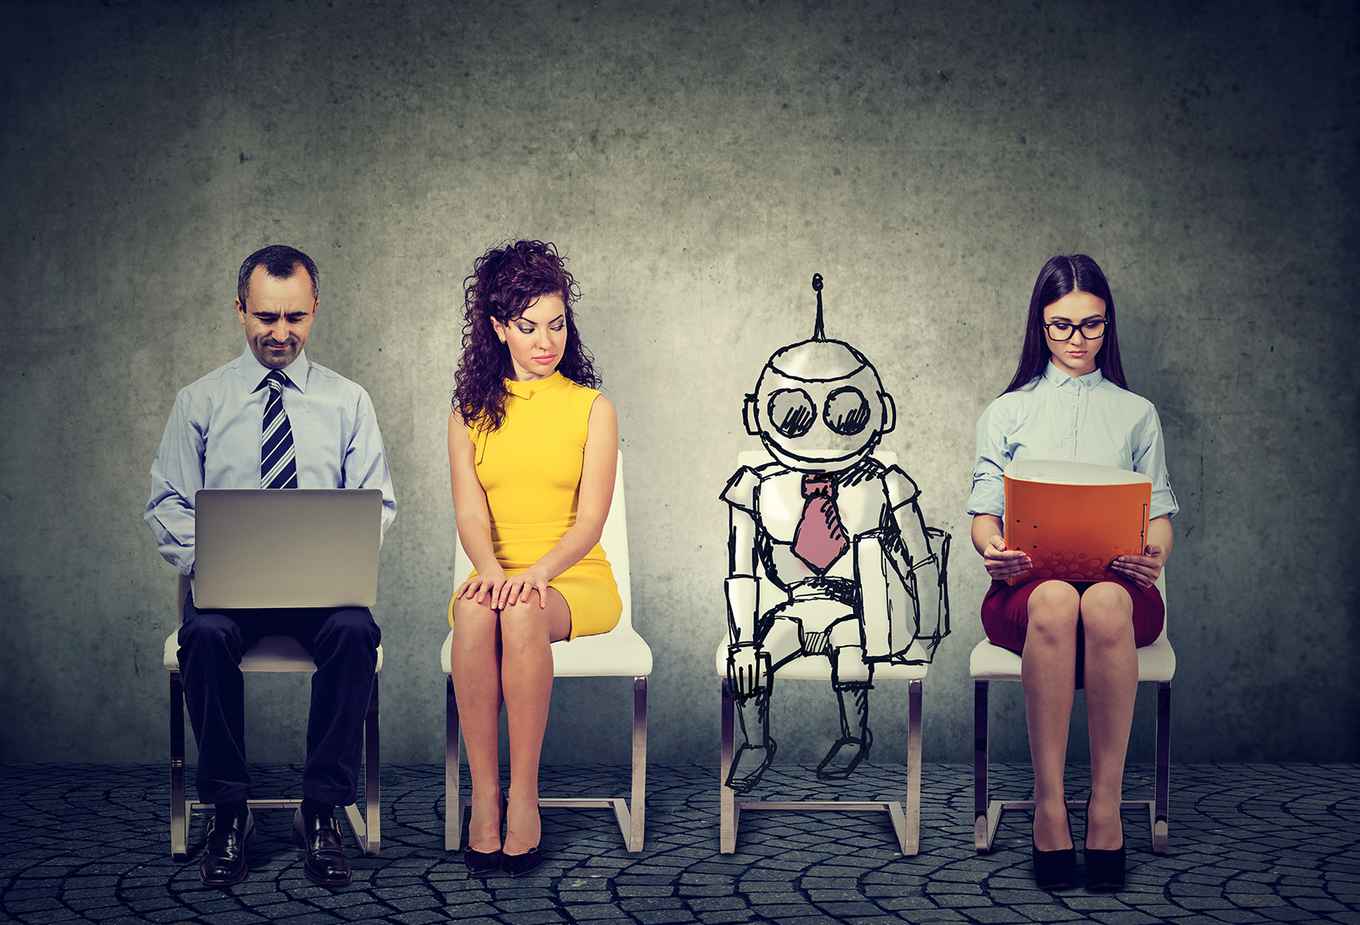 mensen wachten voor sollicitatiegesprek, samen met een robot